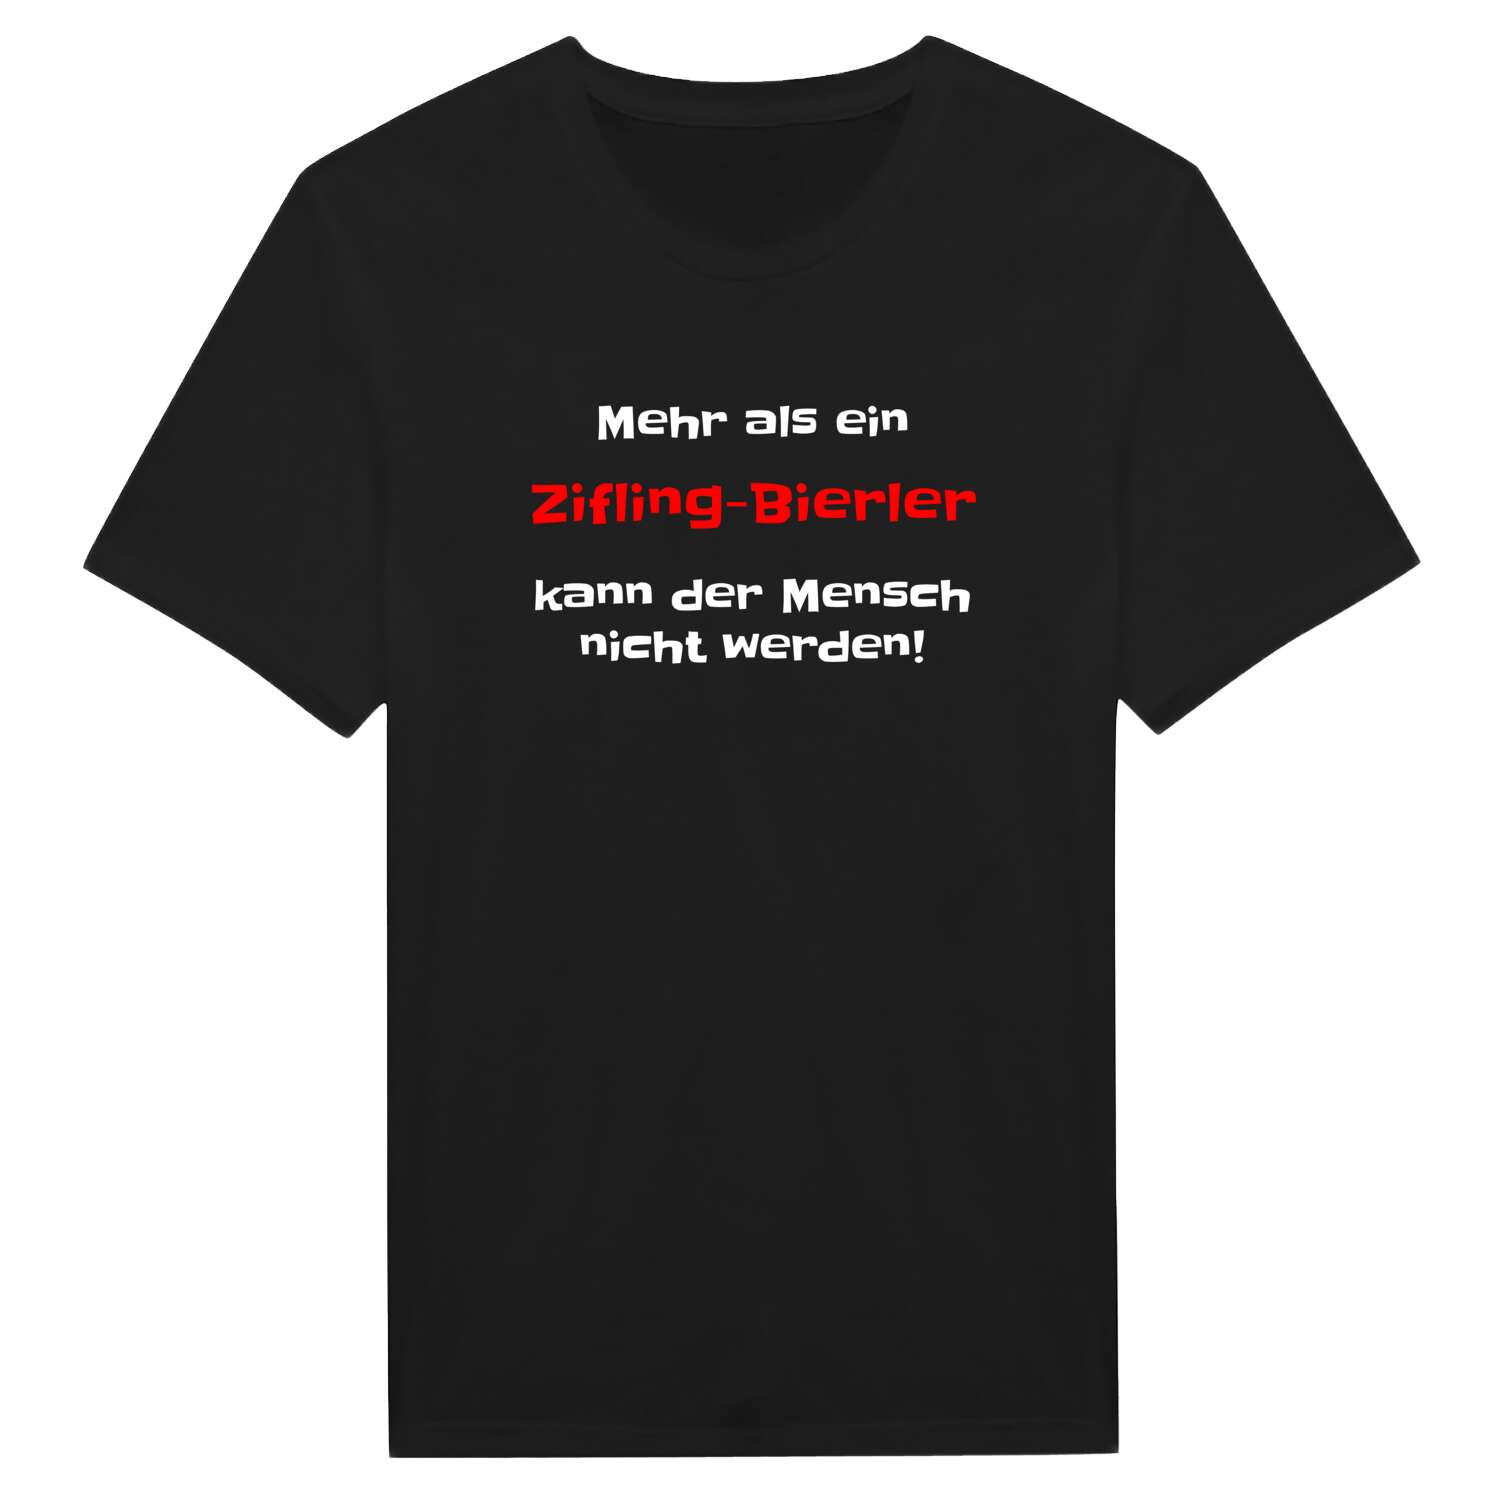 Zifling-Bierl T-Shirt »Mehr als ein«